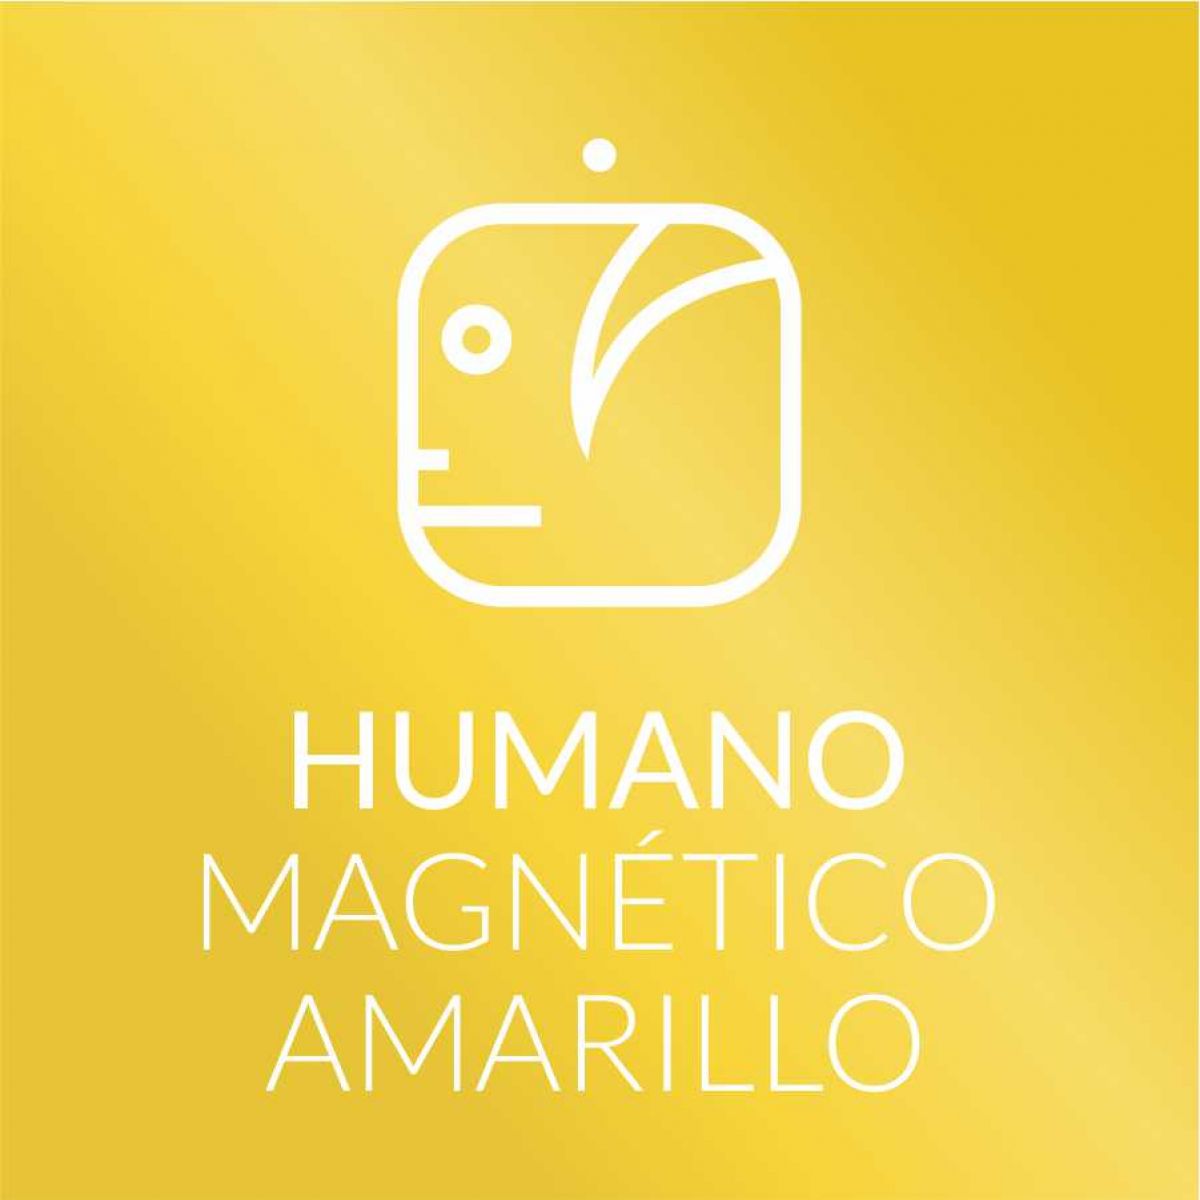 Humano Magnético Amarillo